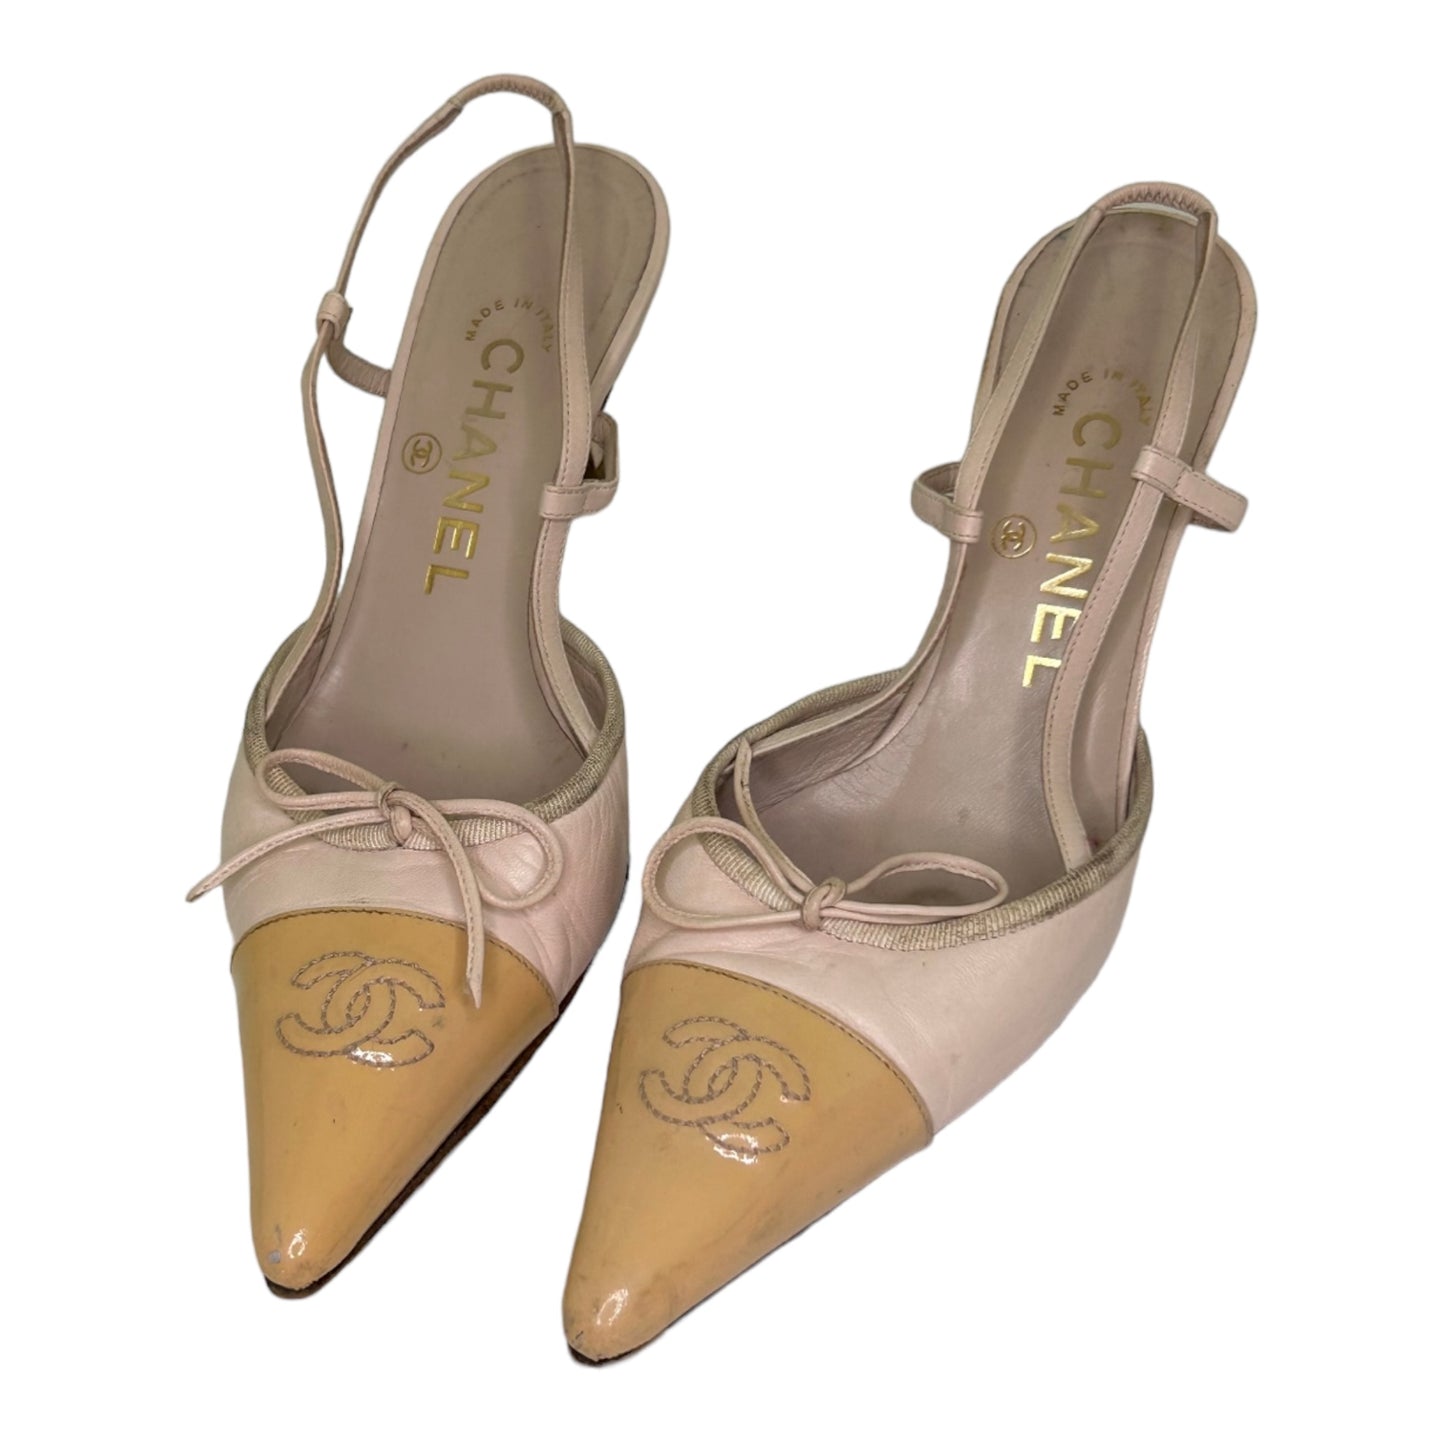 Vintage Chanel CC logo sling back heels